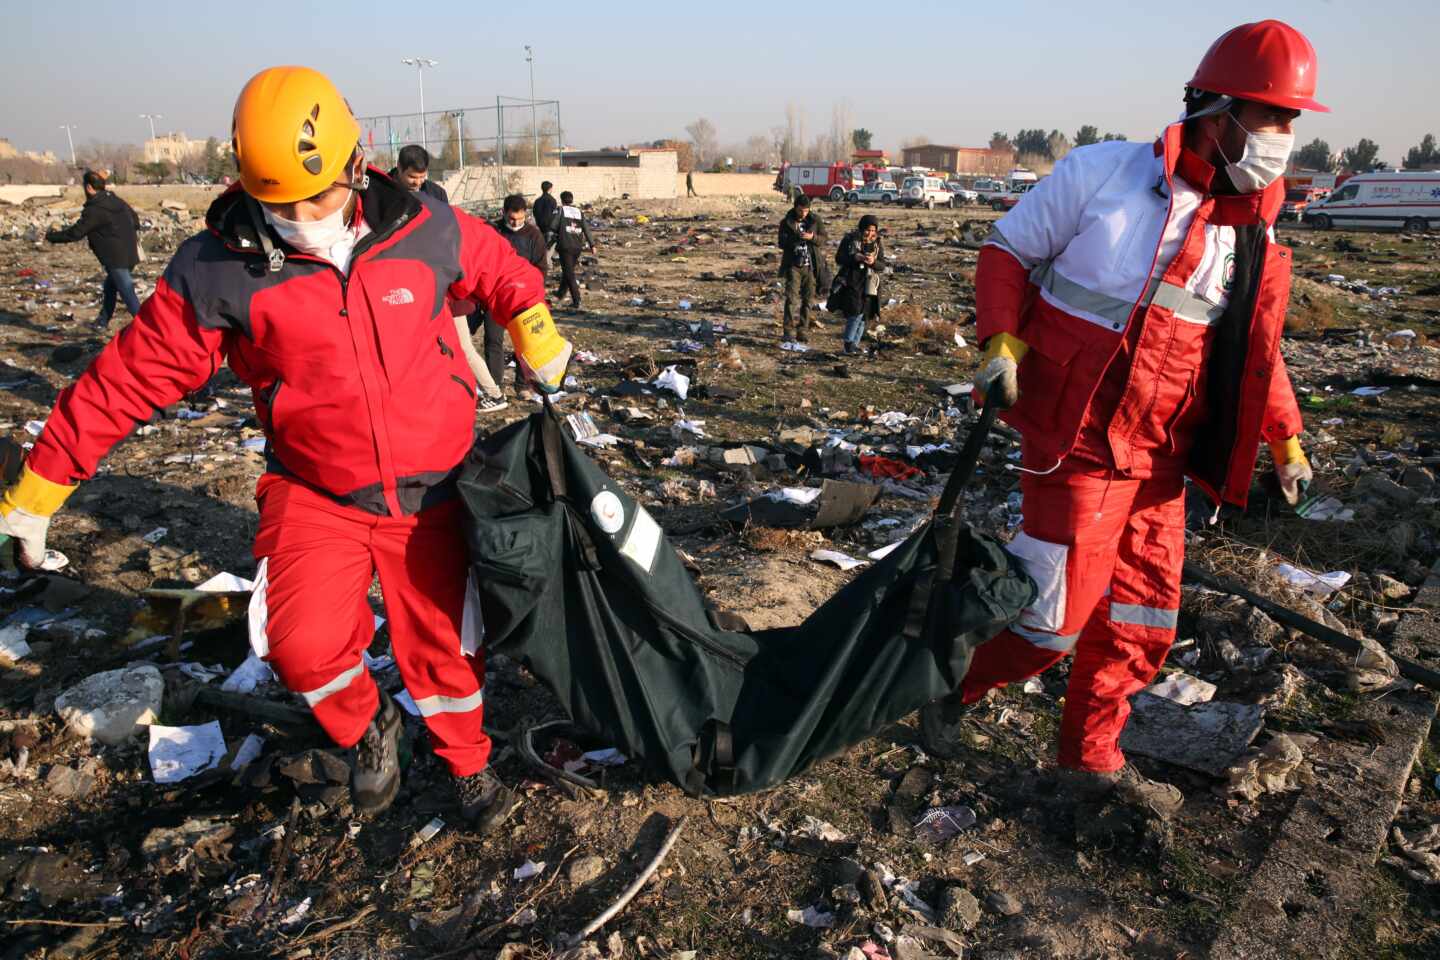 Vuelo PS 752: todas las dudas sobre el avión de Ukraine Airlines estrellado en Irán